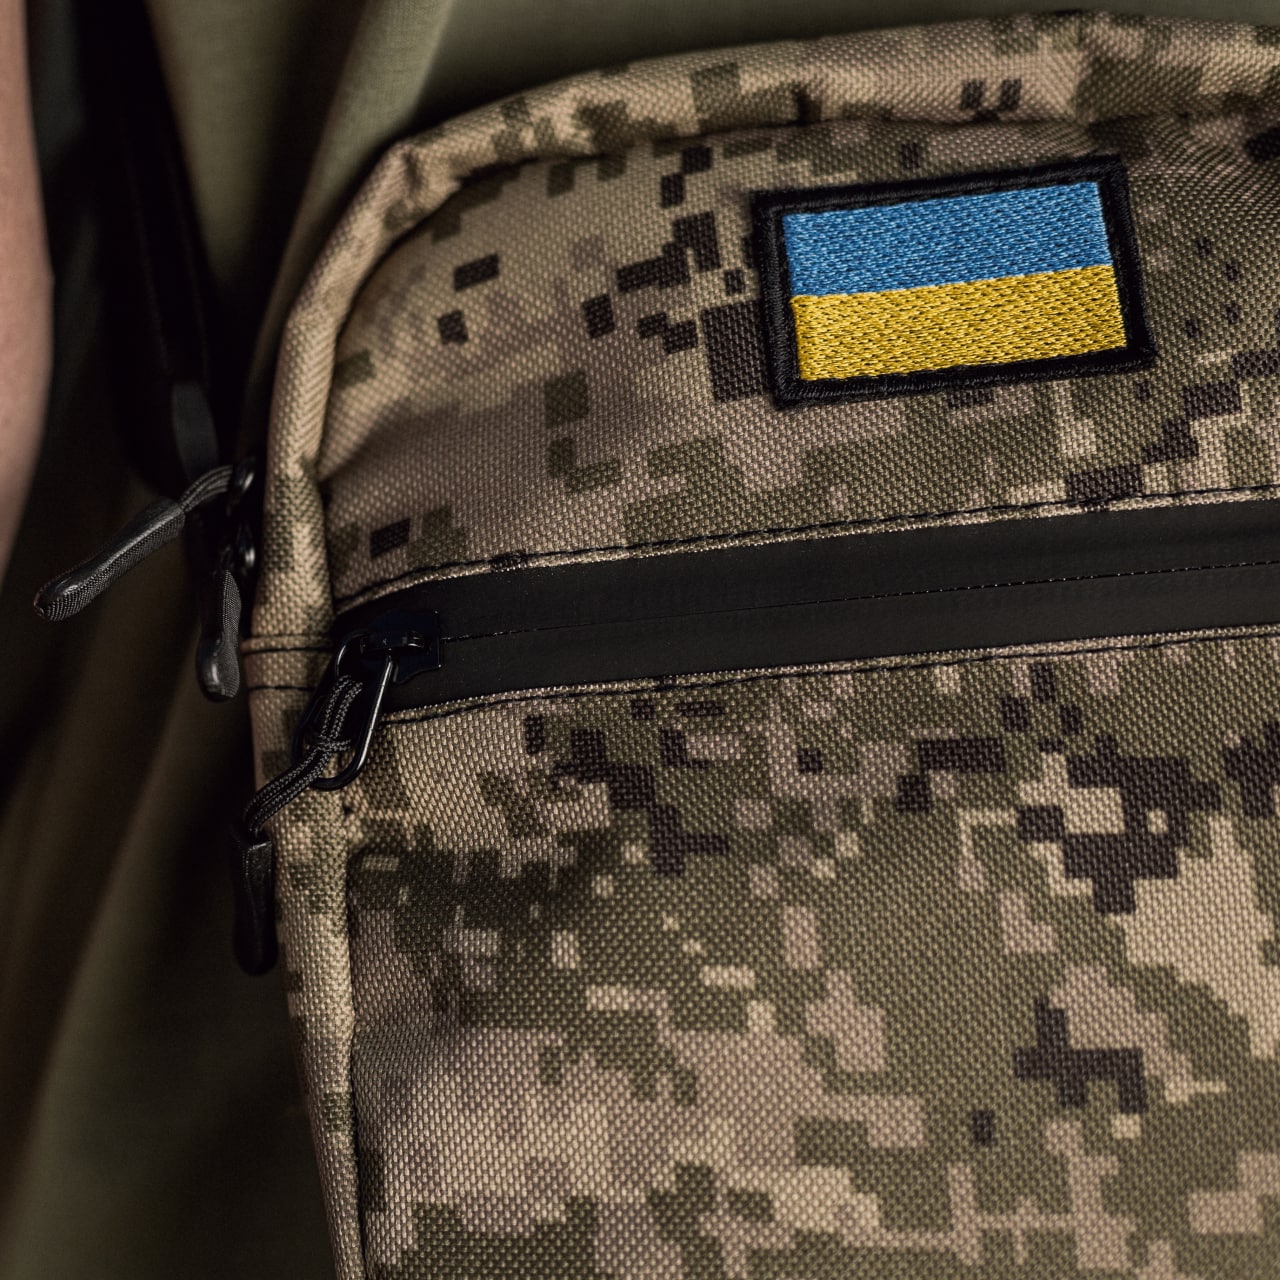 Месенджер South Ukraine Pixel  - фото 4